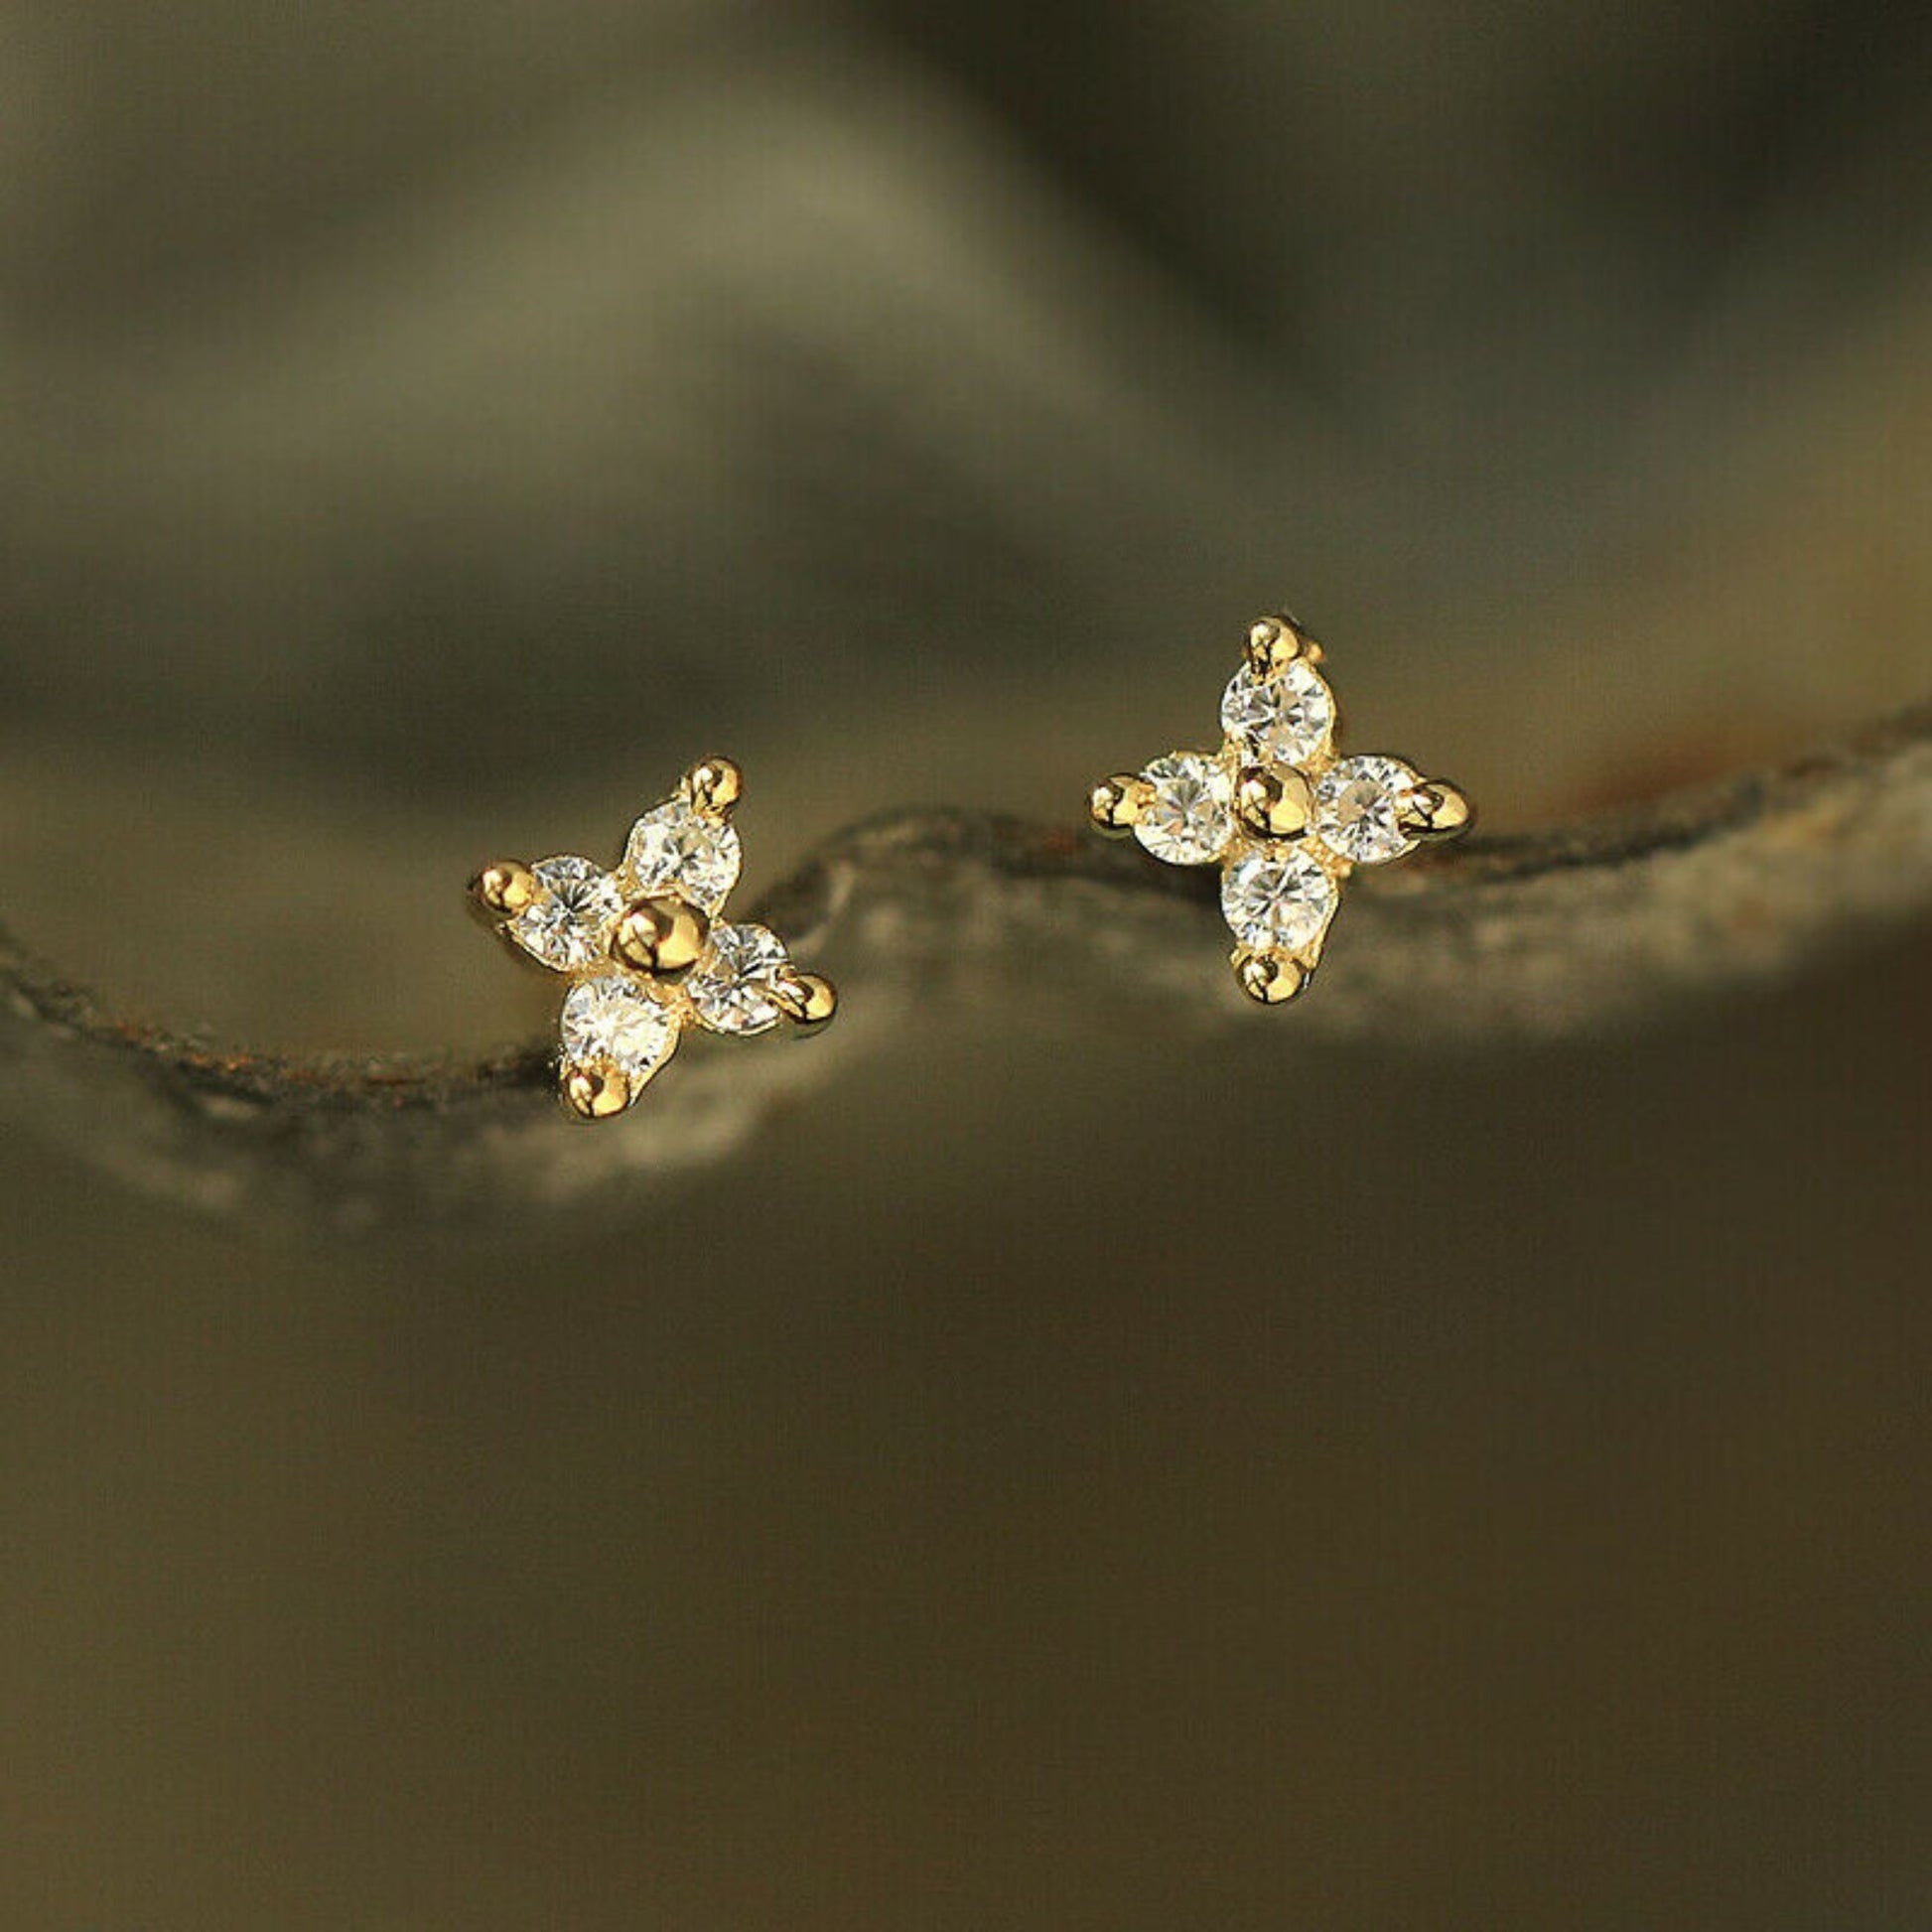 Shiny CZ Flower Stud Earrings in 18K Gold Plated Sterling Silver - sugarkittenlondon